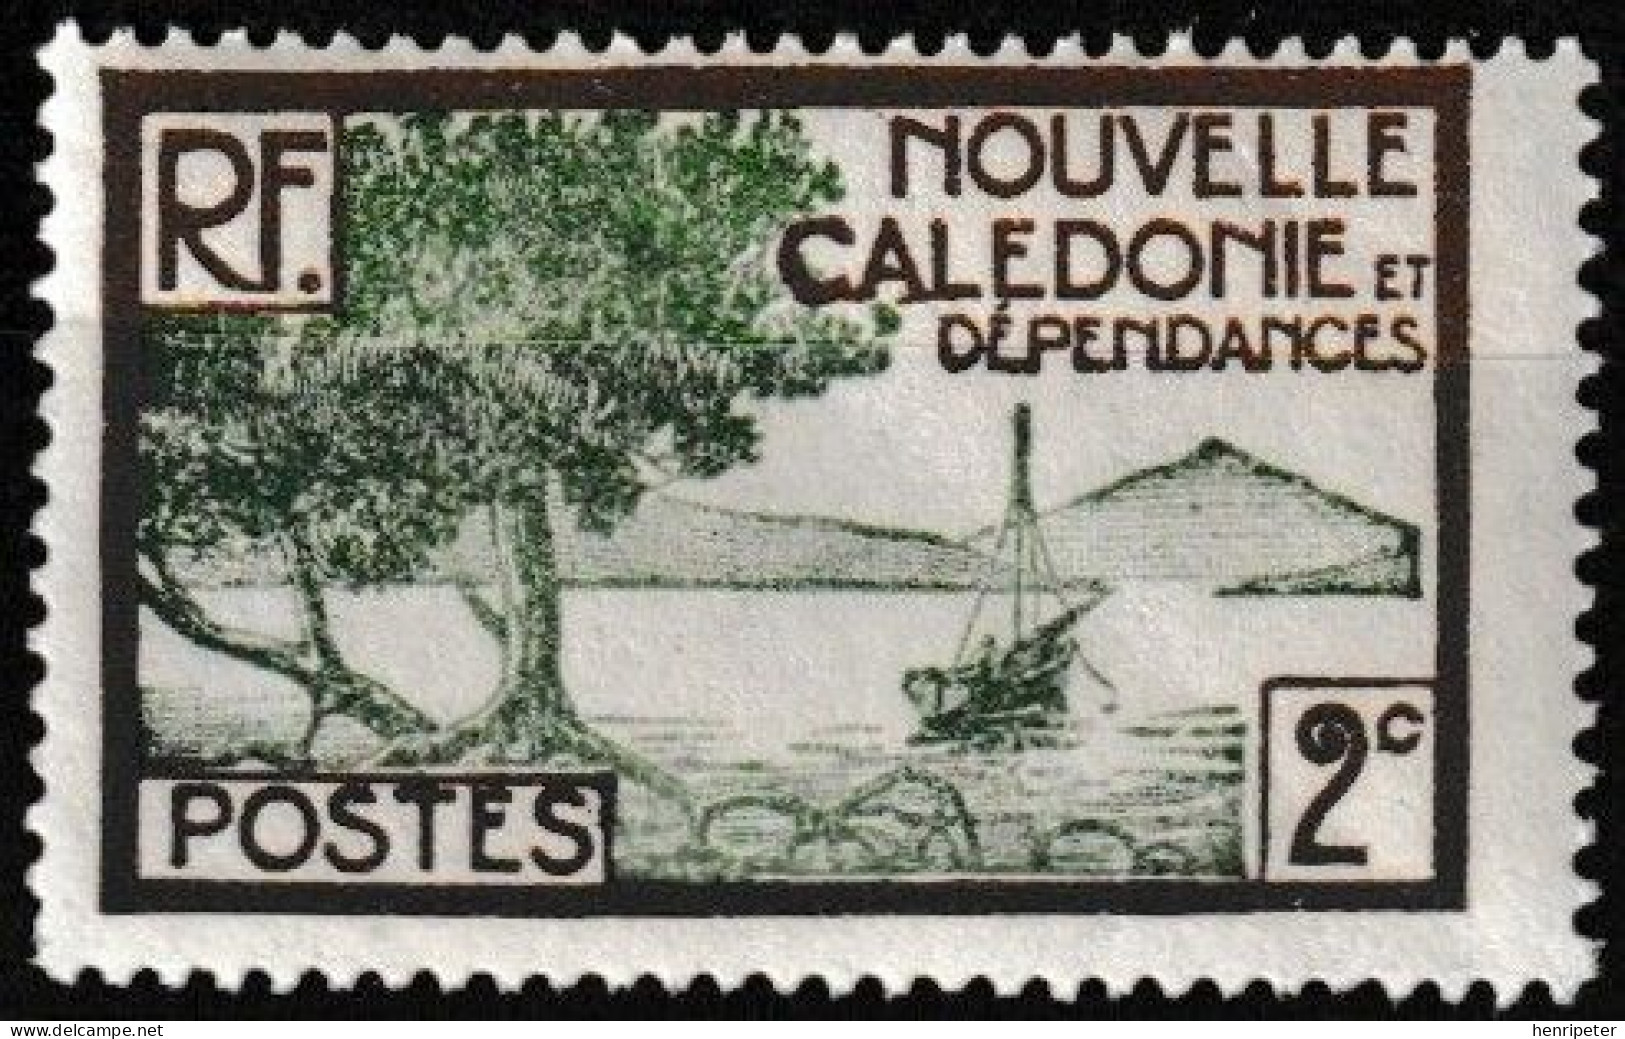 Timbre-poste Gommé Neuf** - Baie De La Pointe Des Palétuviers - N° 140 (Yvert) - Nouvelle-Calédonie Et Dépendances 1928 - Unused Stamps